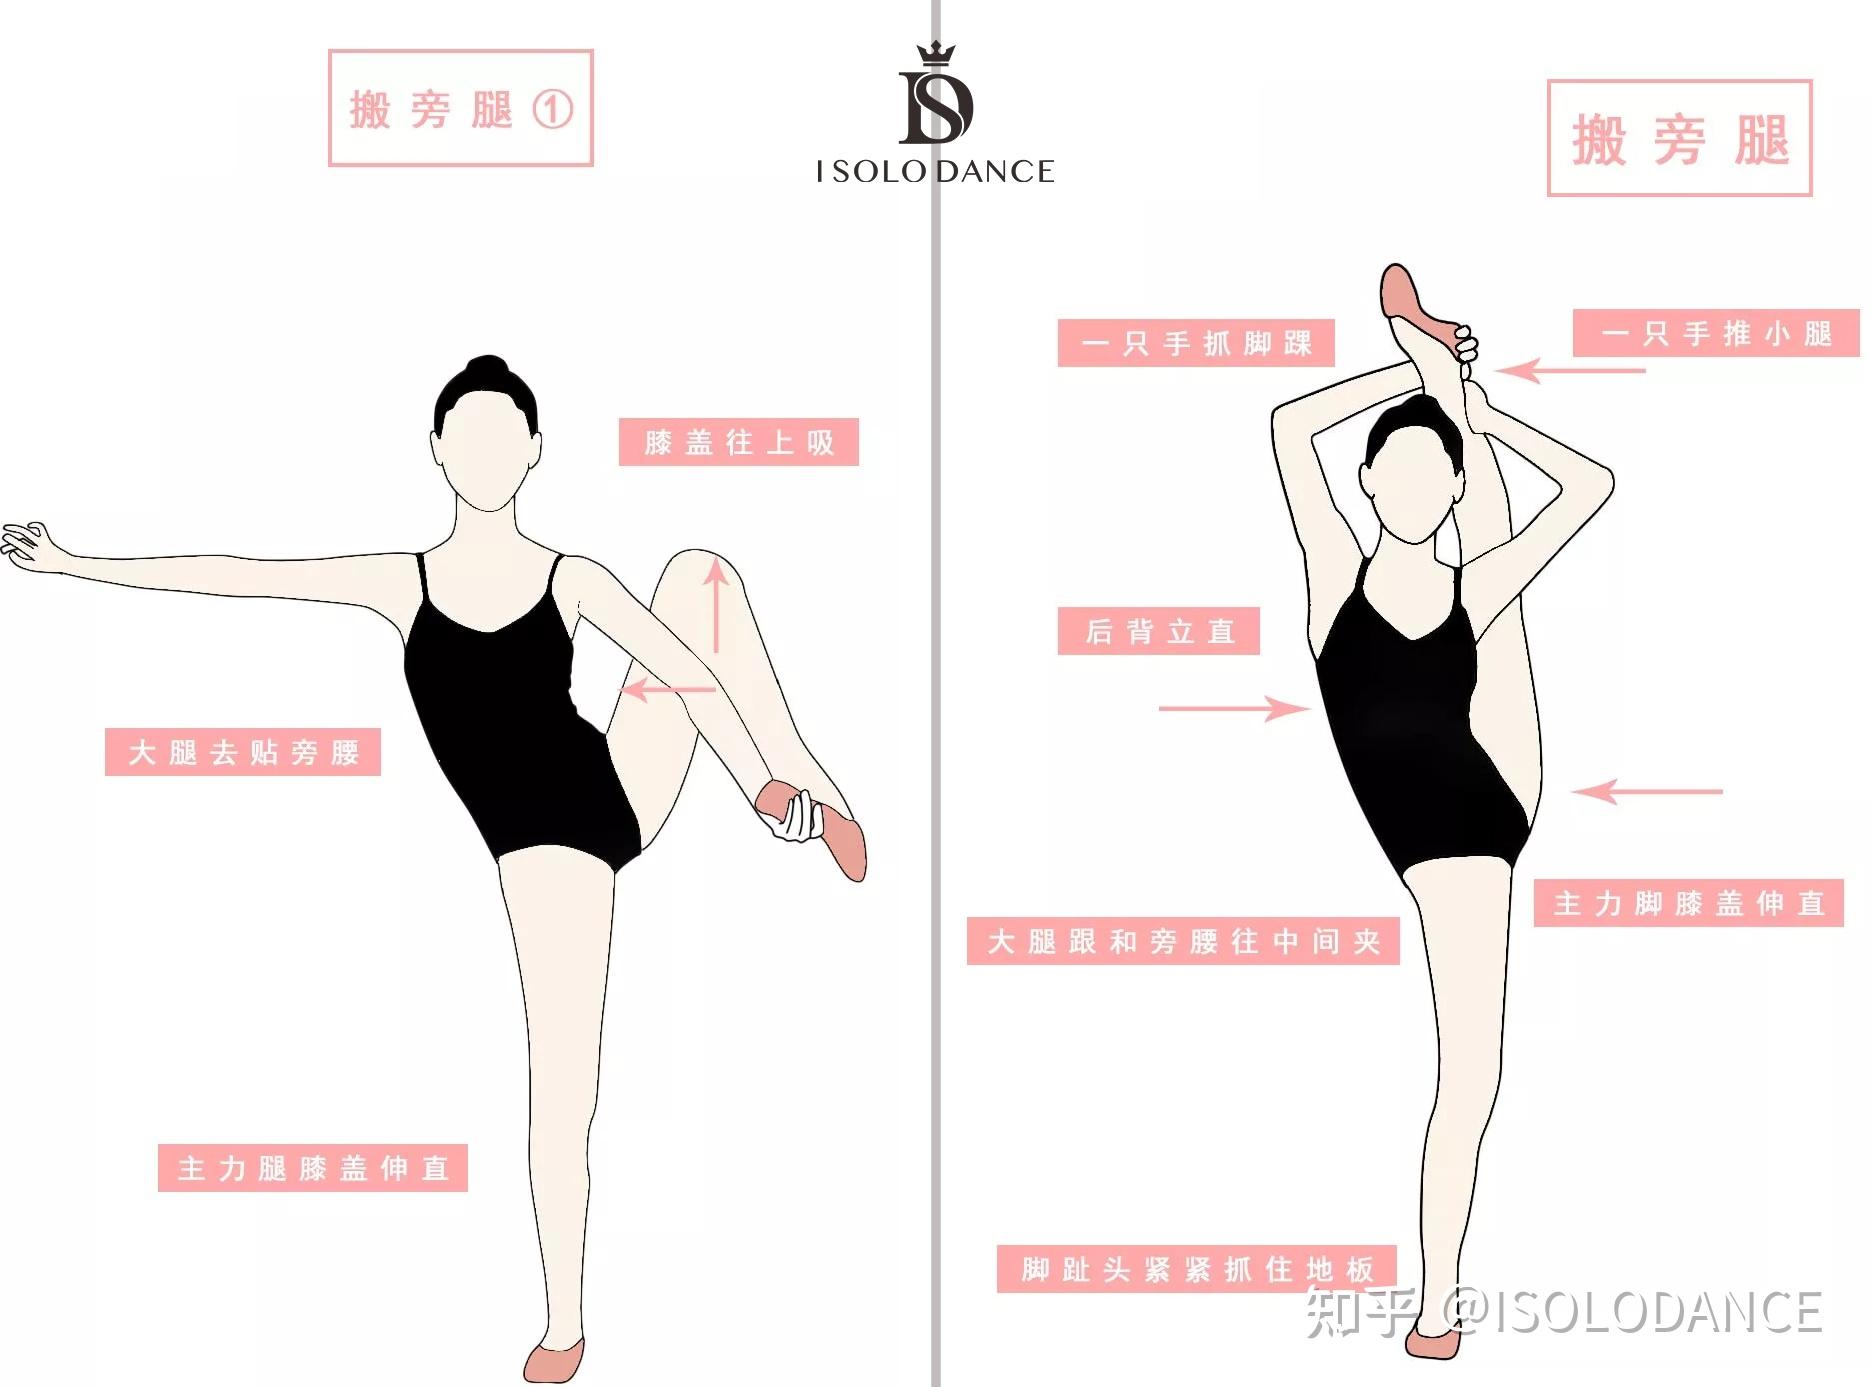 【单色舞蹈】少儿中国舞初级班基本功腿组合展示_哔哩哔哩_bilibili